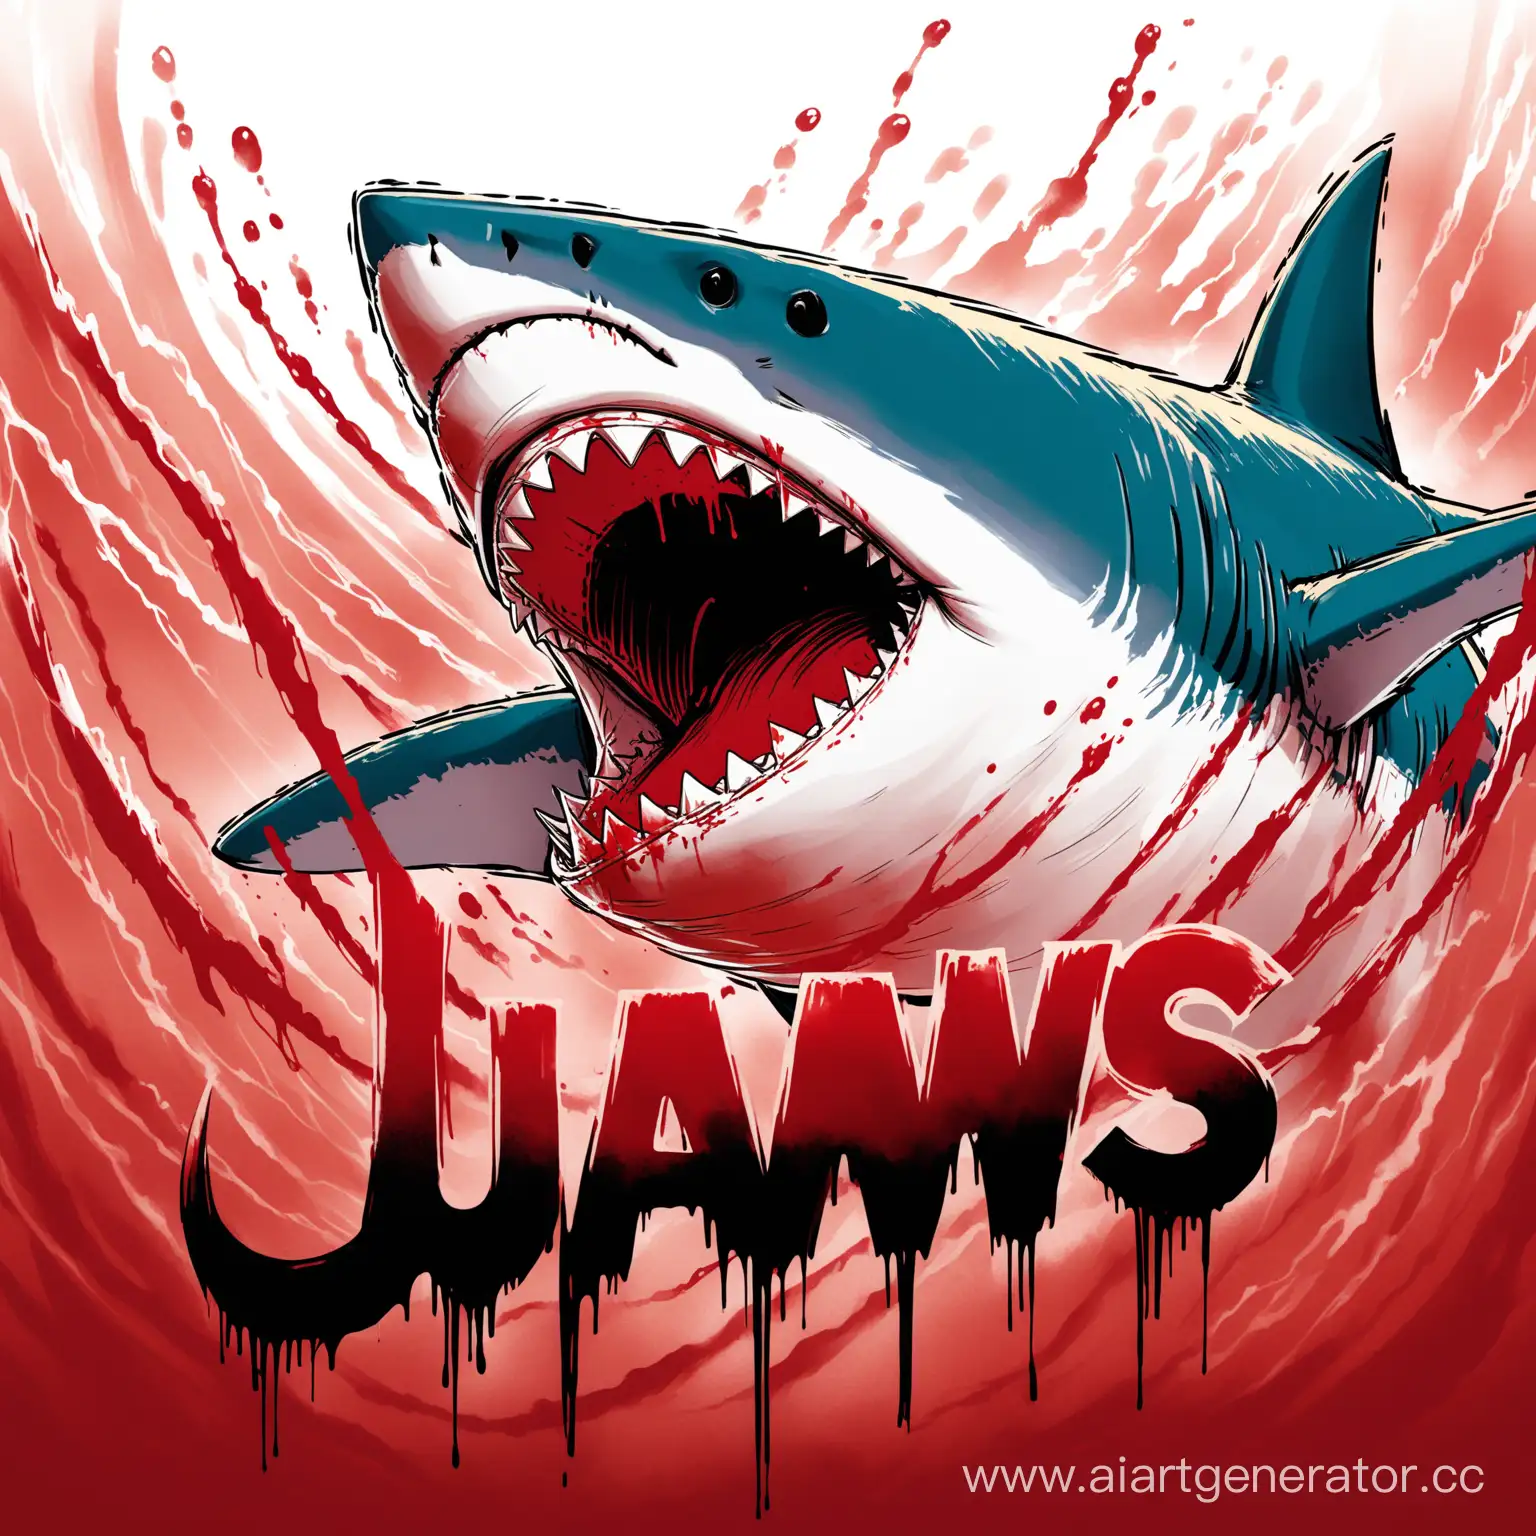 никнейм "jawS", написанный кровью с подтеками, и челюстью акулы на фоне